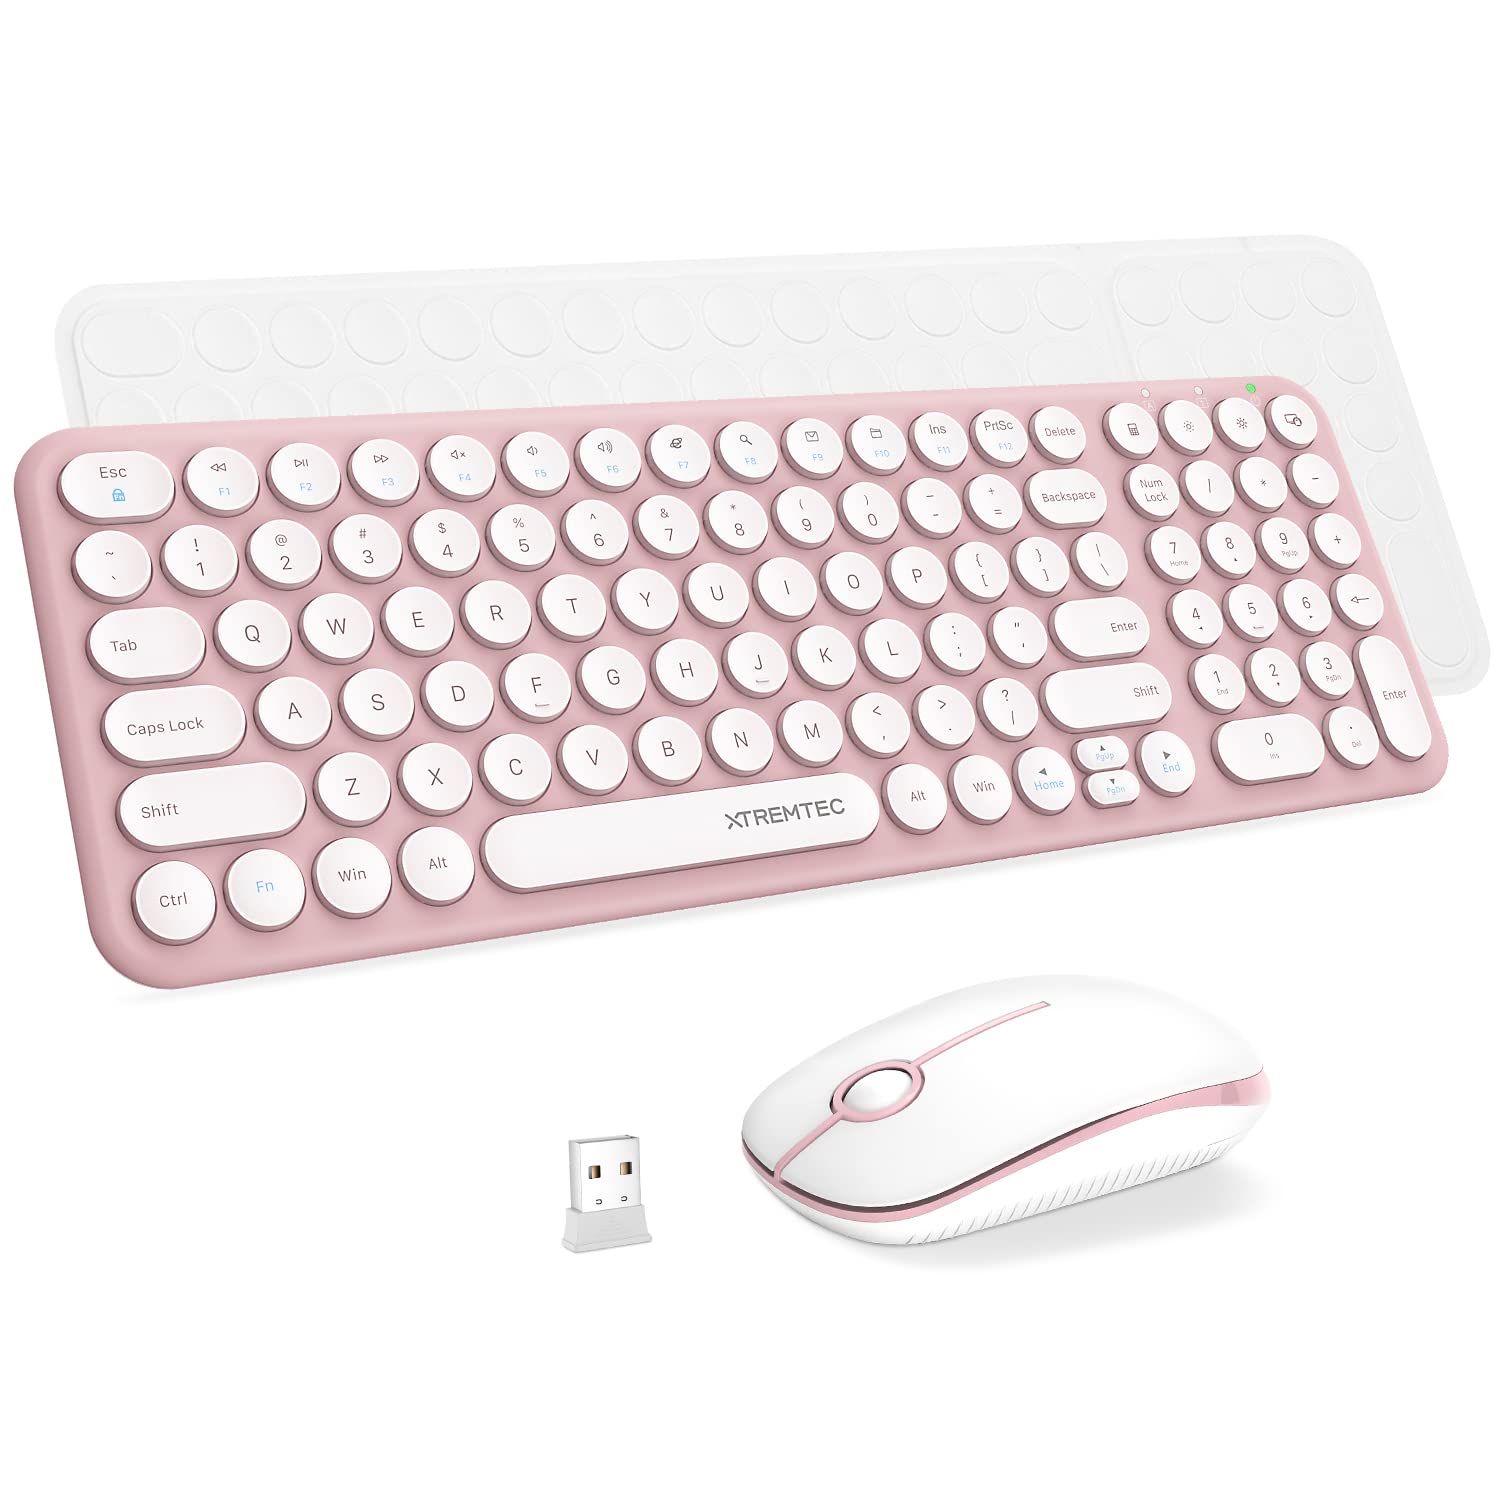 Wireless Keyboard and Mouse Combo XTREMTEC Pink Cute Keyboard là sản phẩm đồng hành tuyệt vời cho những ai yêu thích màu hồng và những sản phẩm đáng yêu. Với thiết kế nhỏ gọn và kết nối không dây thông qua Bluetooth, sản phẩm này sẽ mang lại sự tiện lợi và tiết kiệm không gian cho người sử dụng.